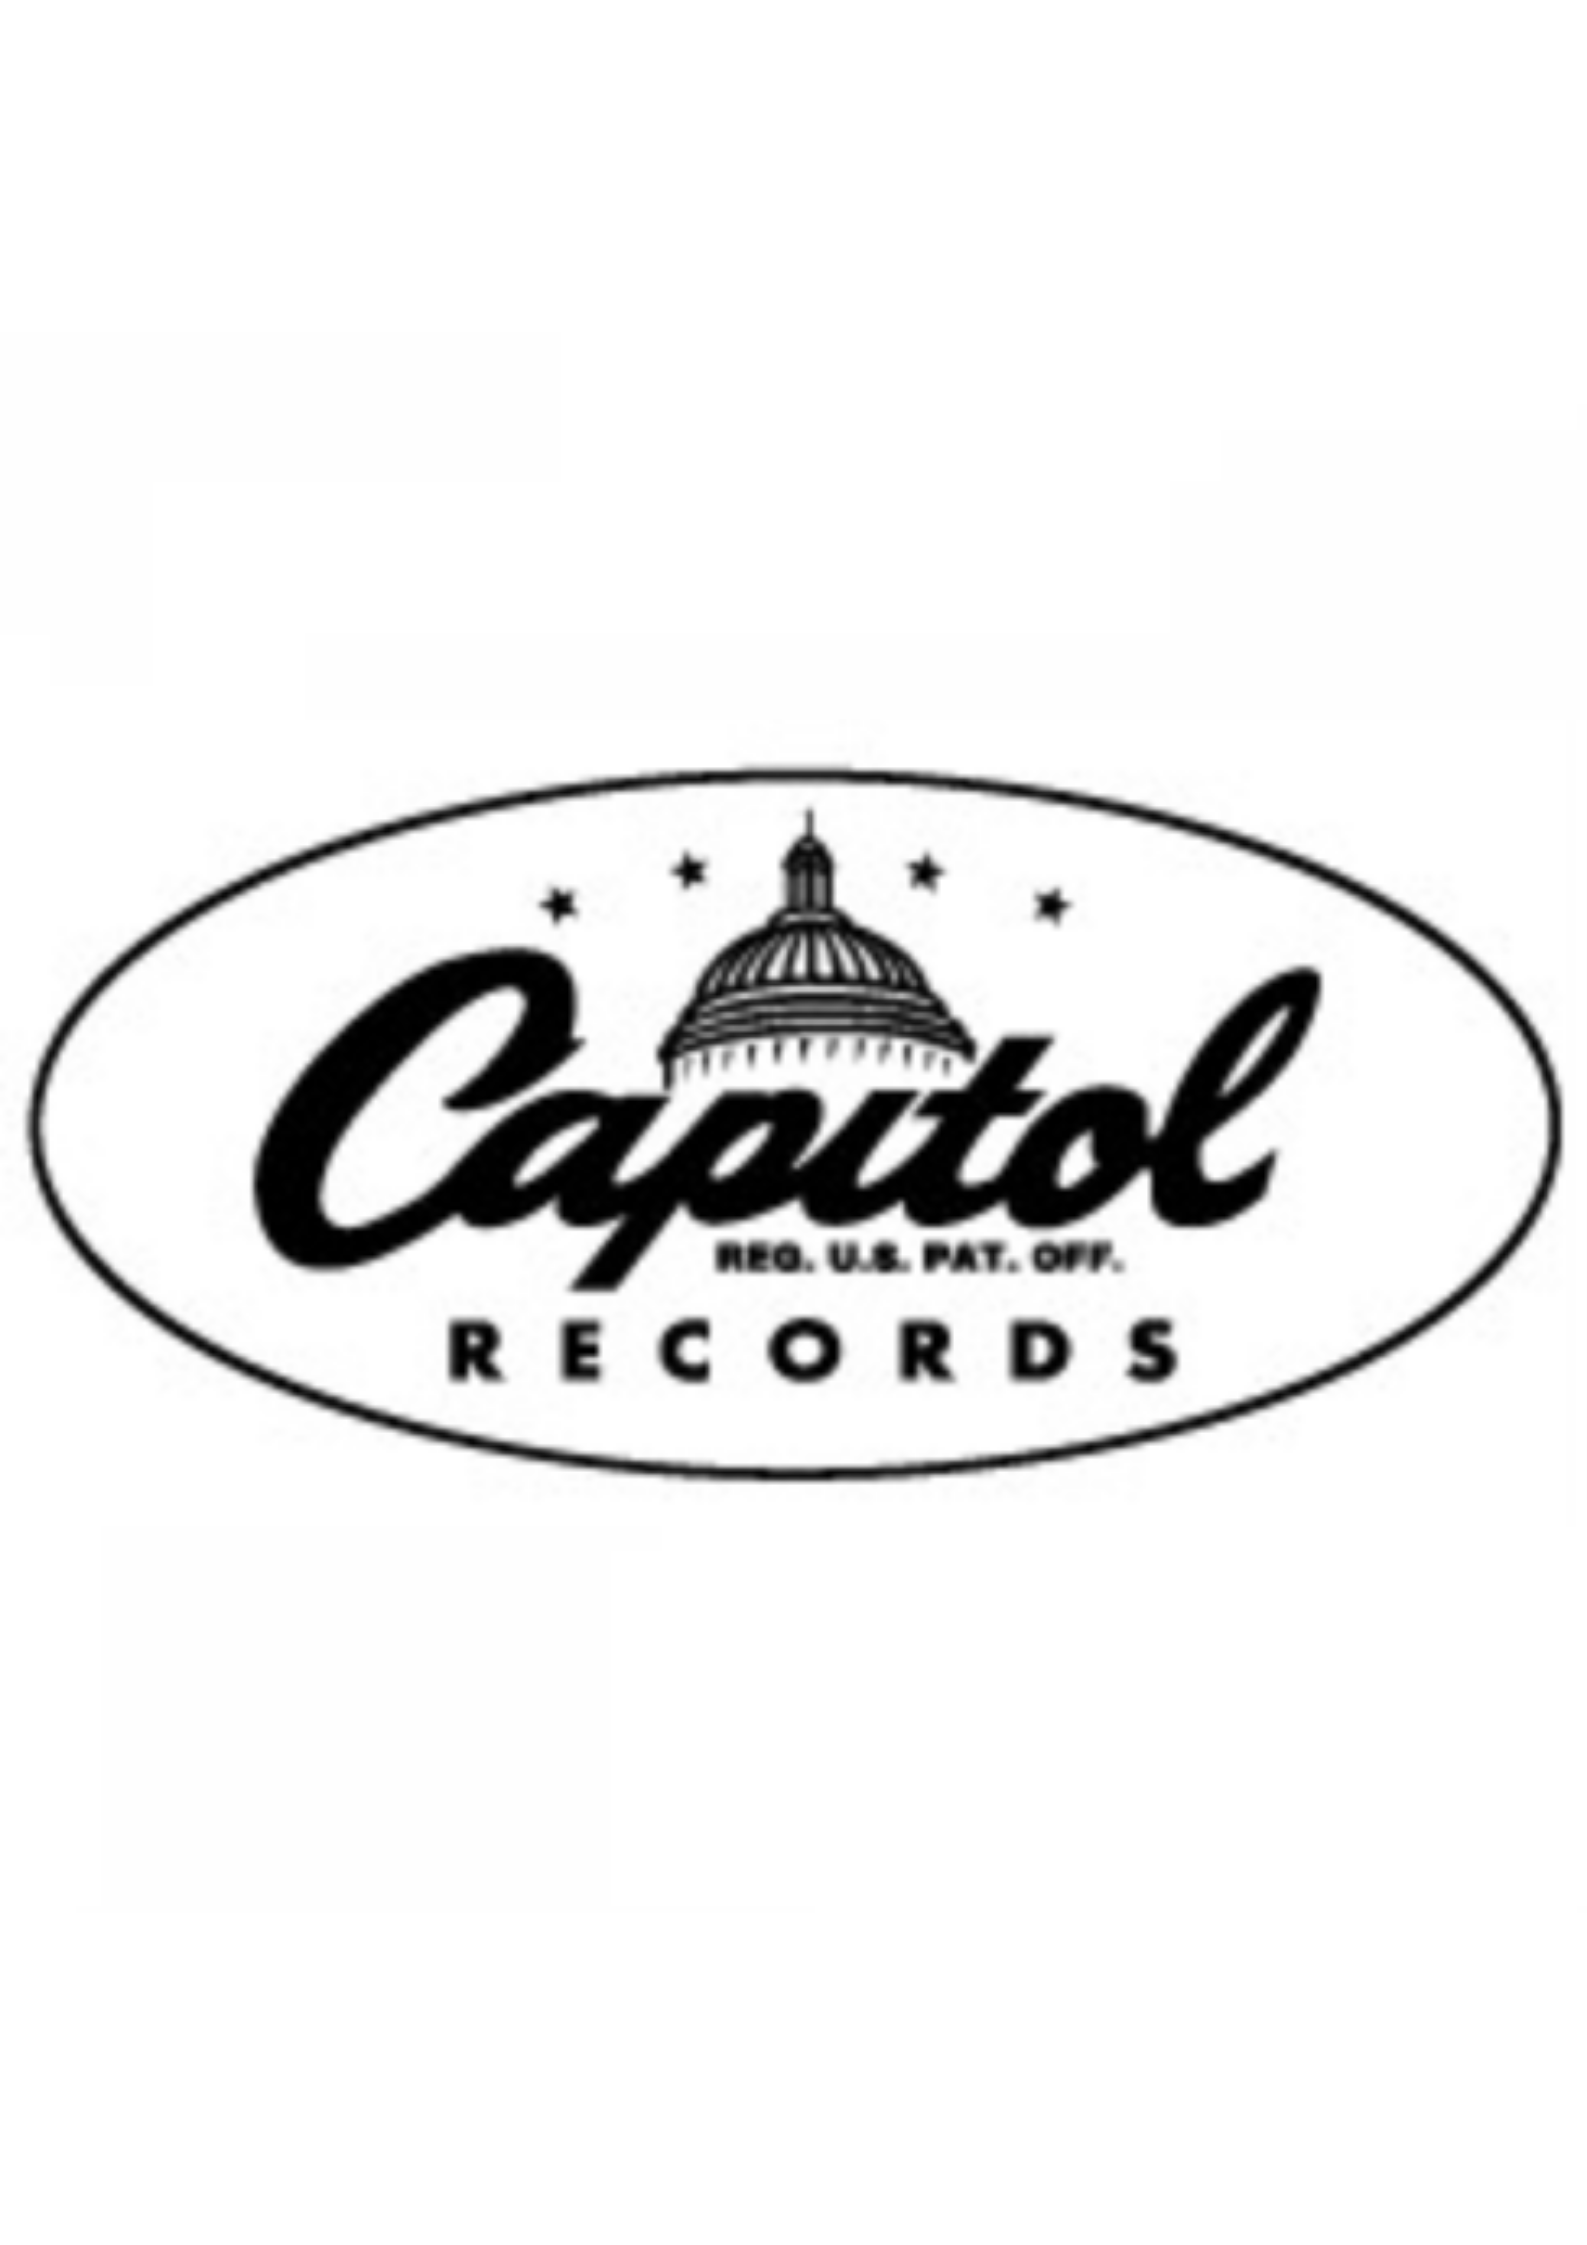 Capitol Records logo.png